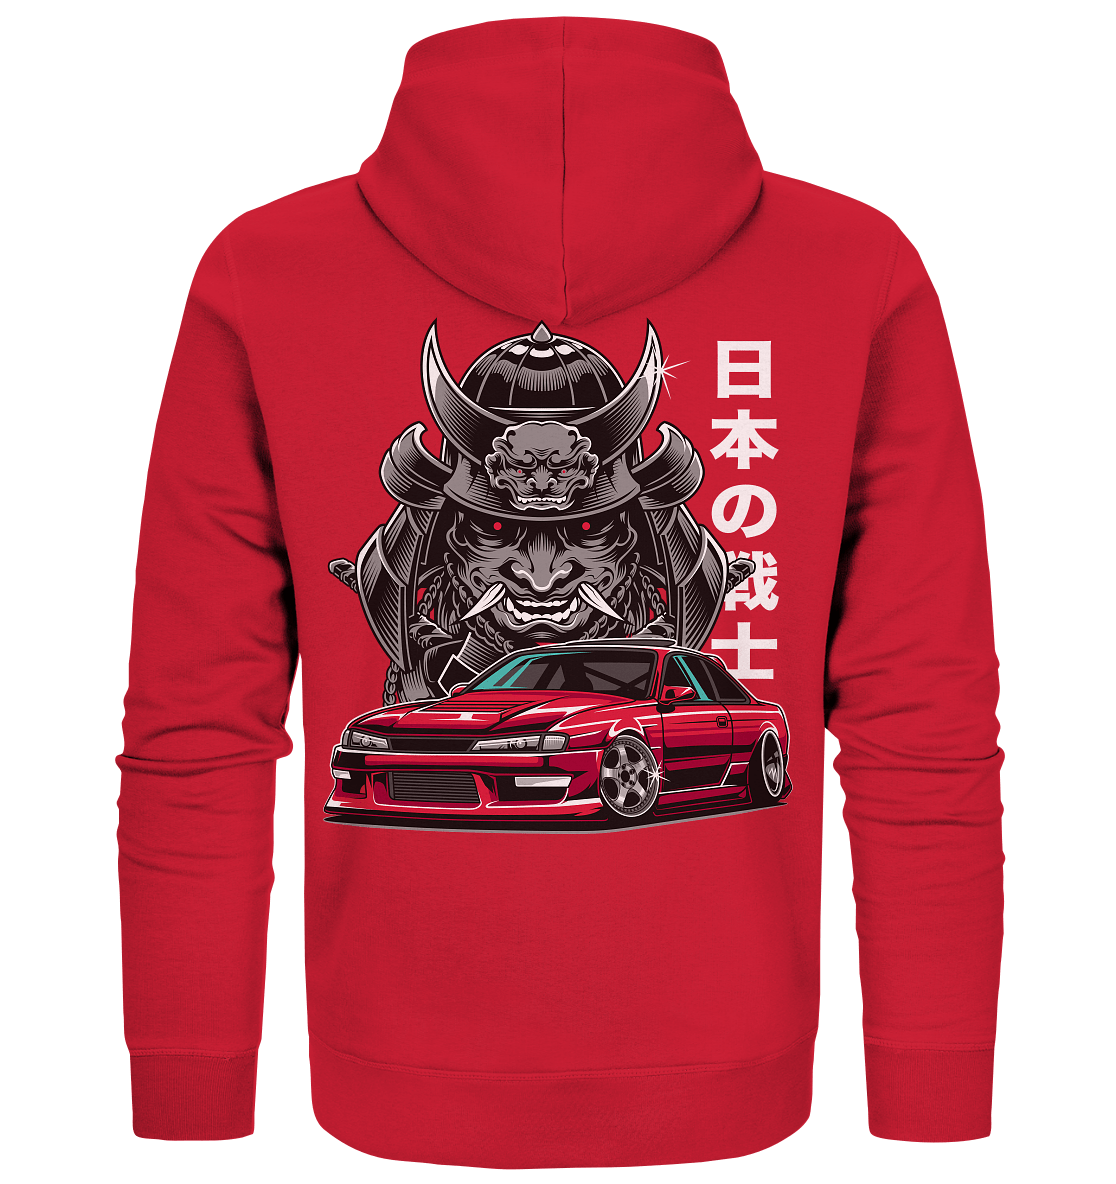 Samurai Silvia - Organic Zipper - MotoMerch.de